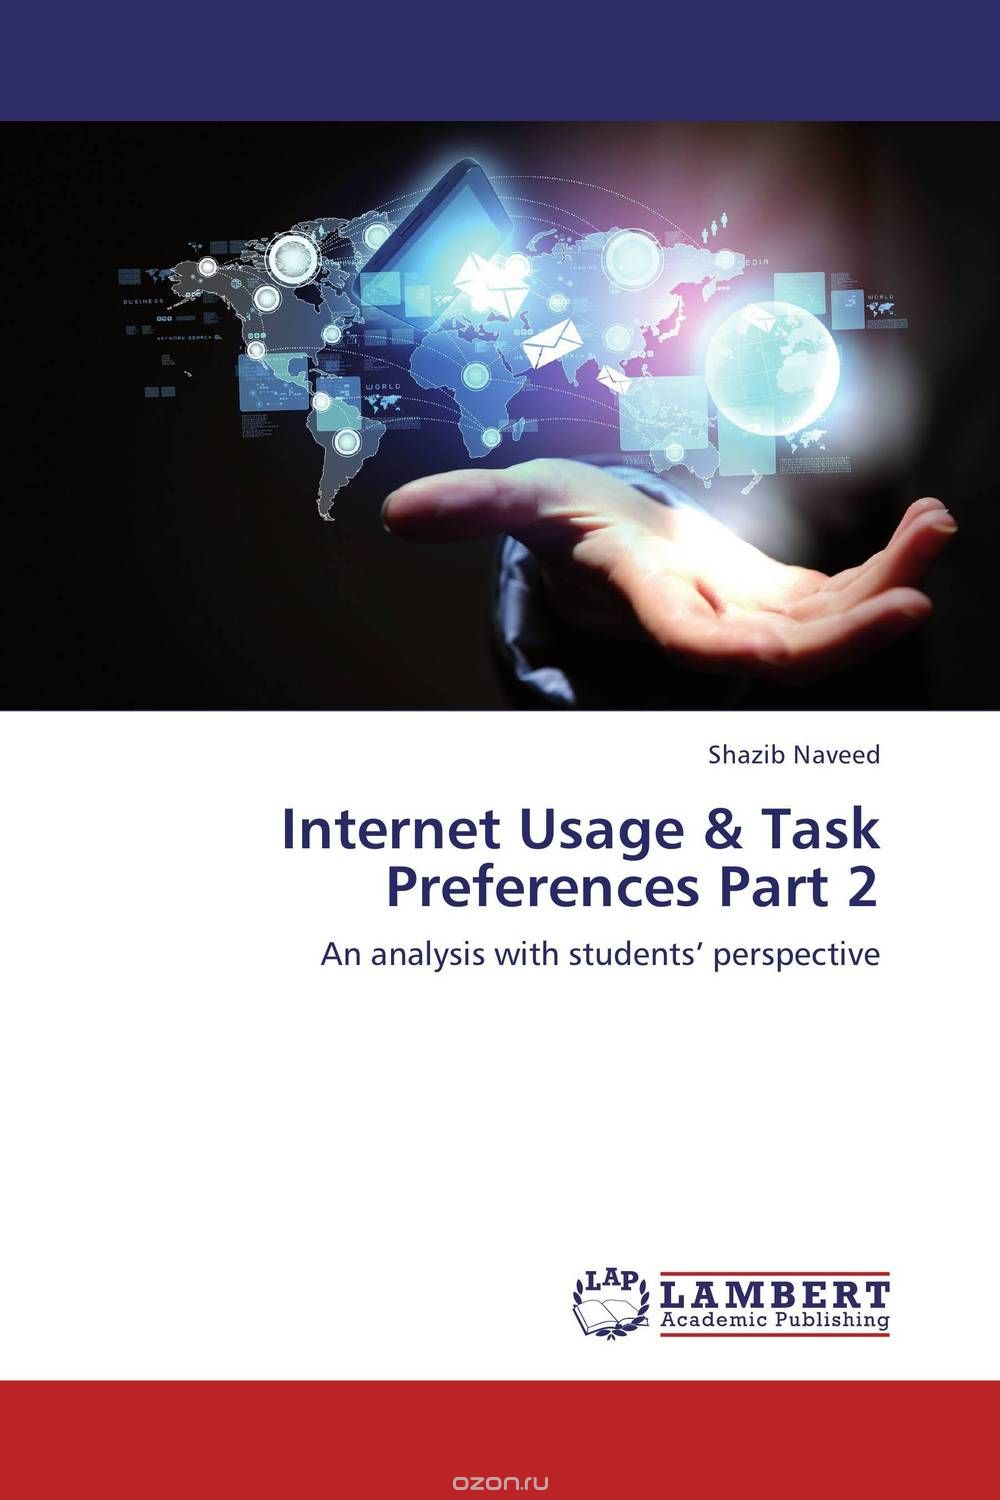 Скачать книгу "Internet Usage & Task Preferences Part 2"